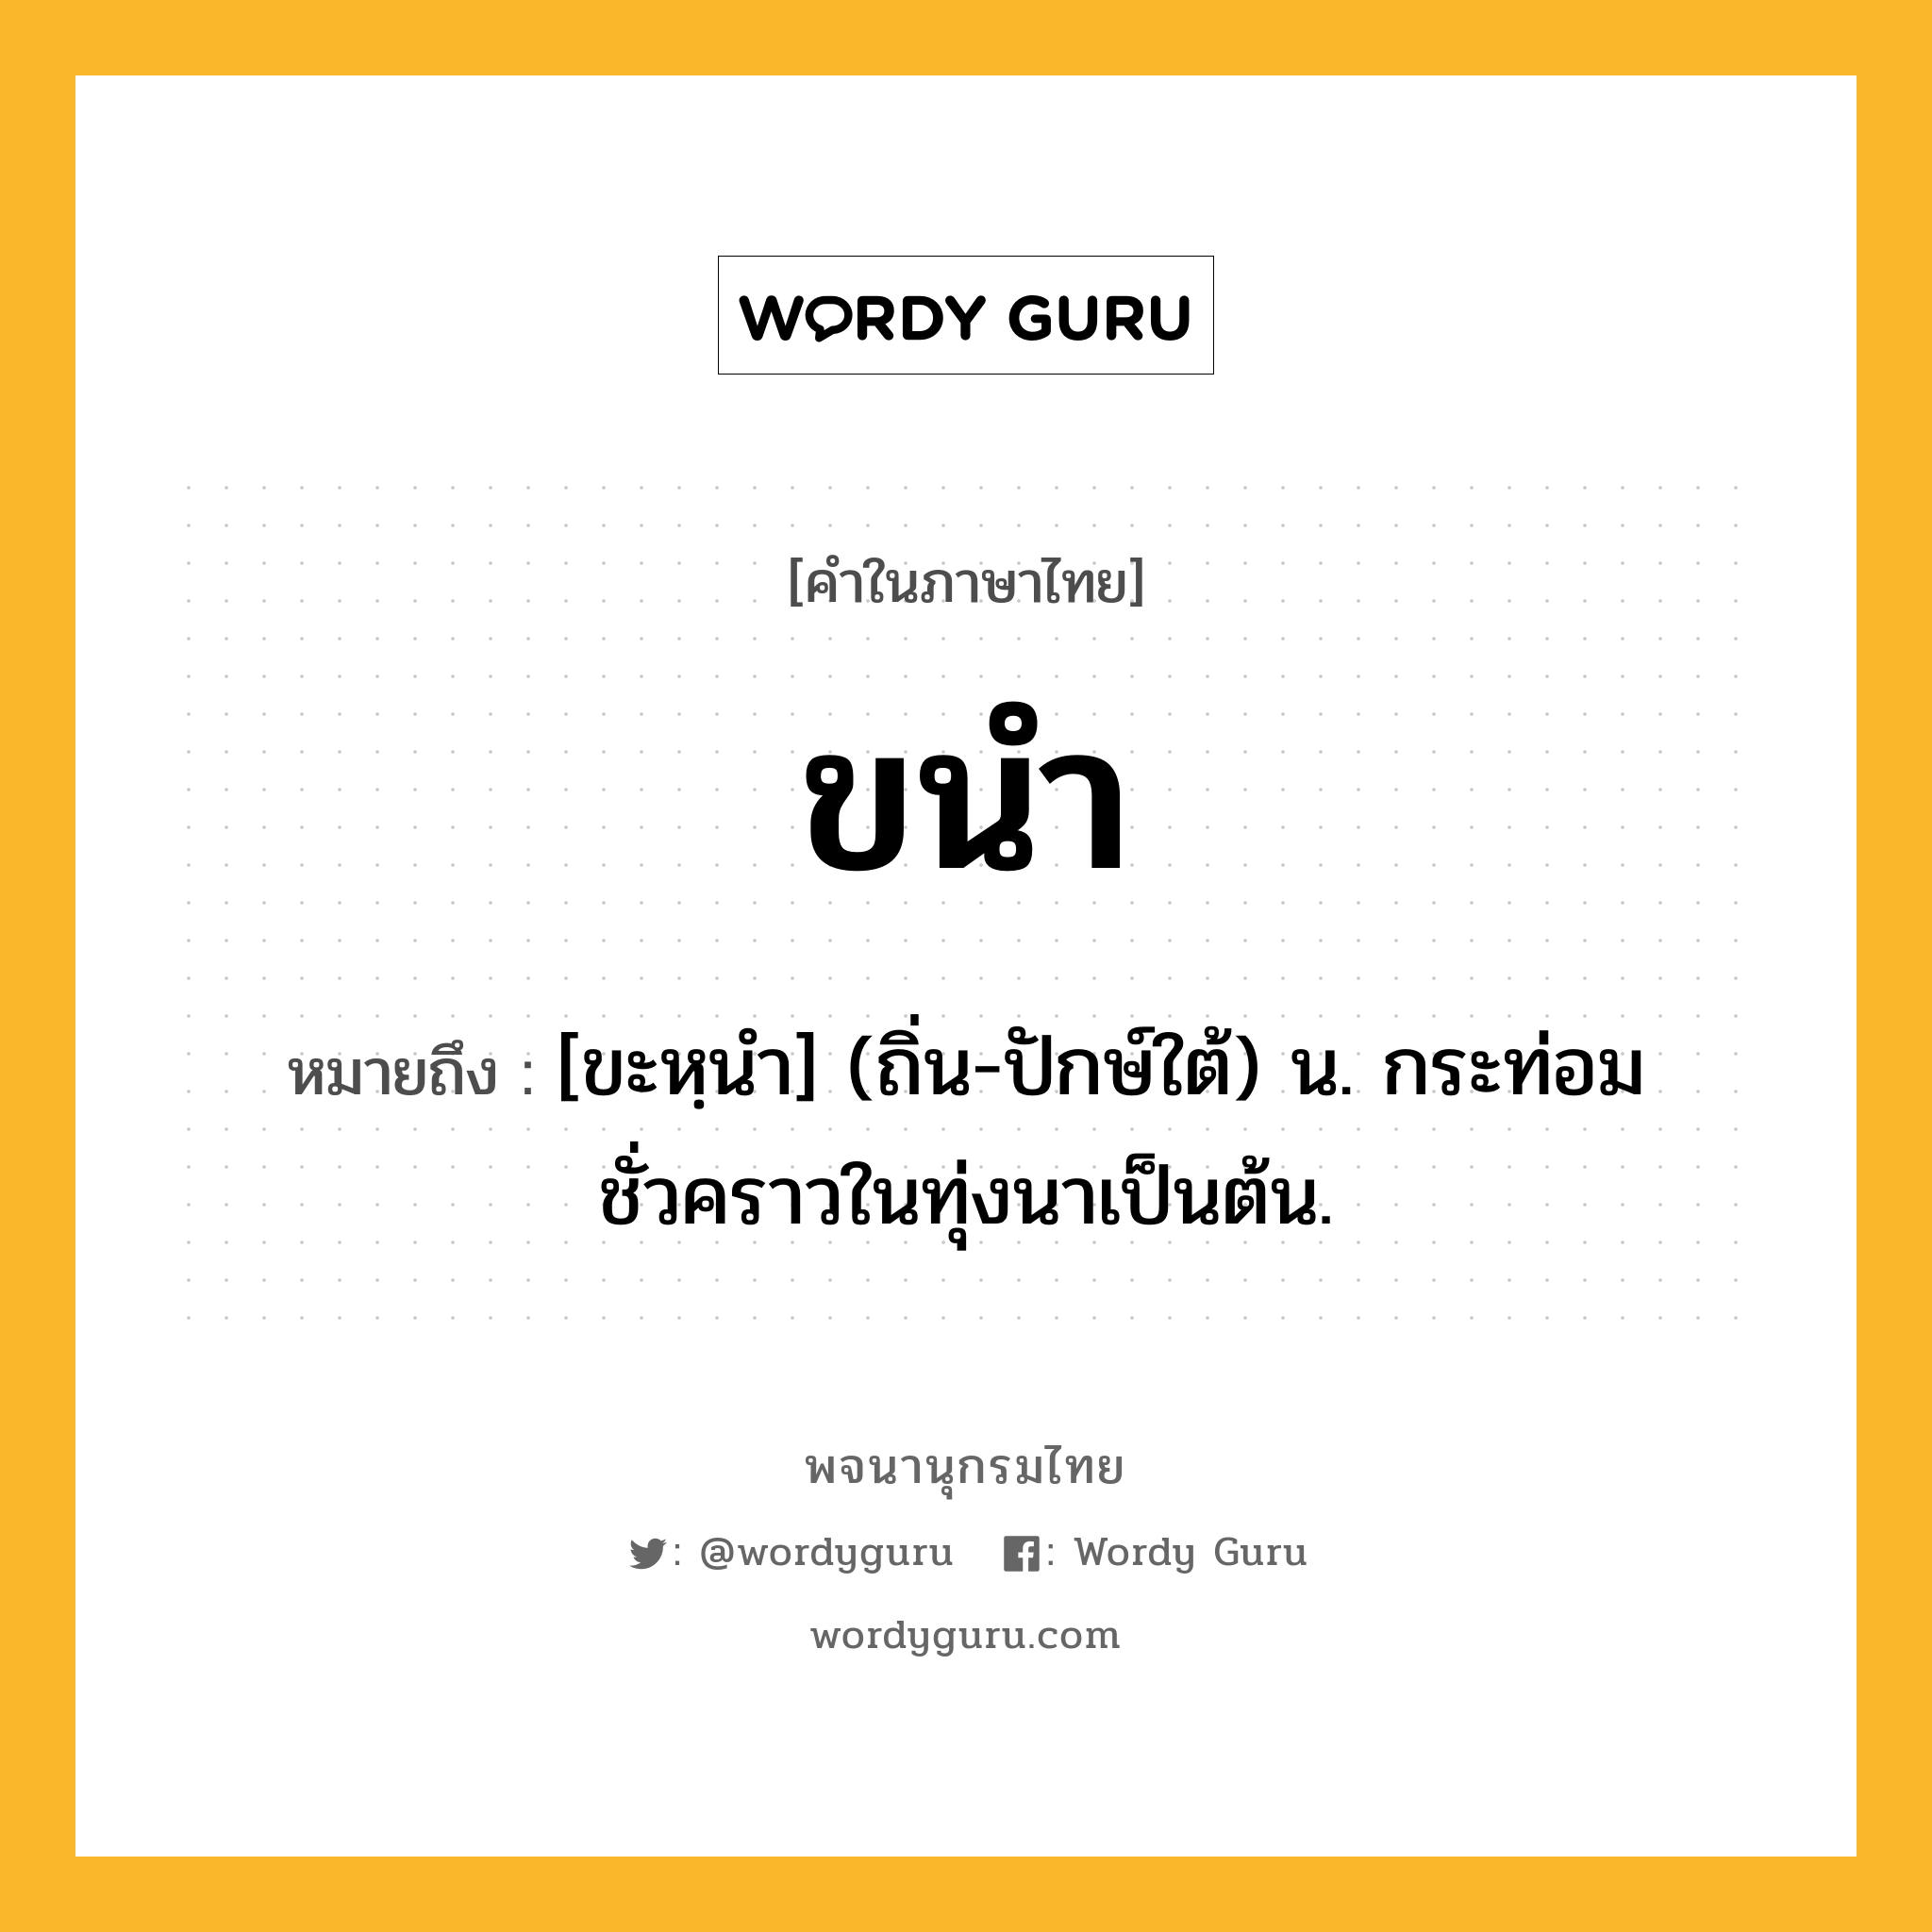 ขนำ หมายถึงอะไร?, คำในภาษาไทย ขนำ หมายถึง [ขะหฺนํา] (ถิ่น-ปักษ์ใต้) น. กระท่อมชั่วคราวในทุ่งนาเป็นต้น.